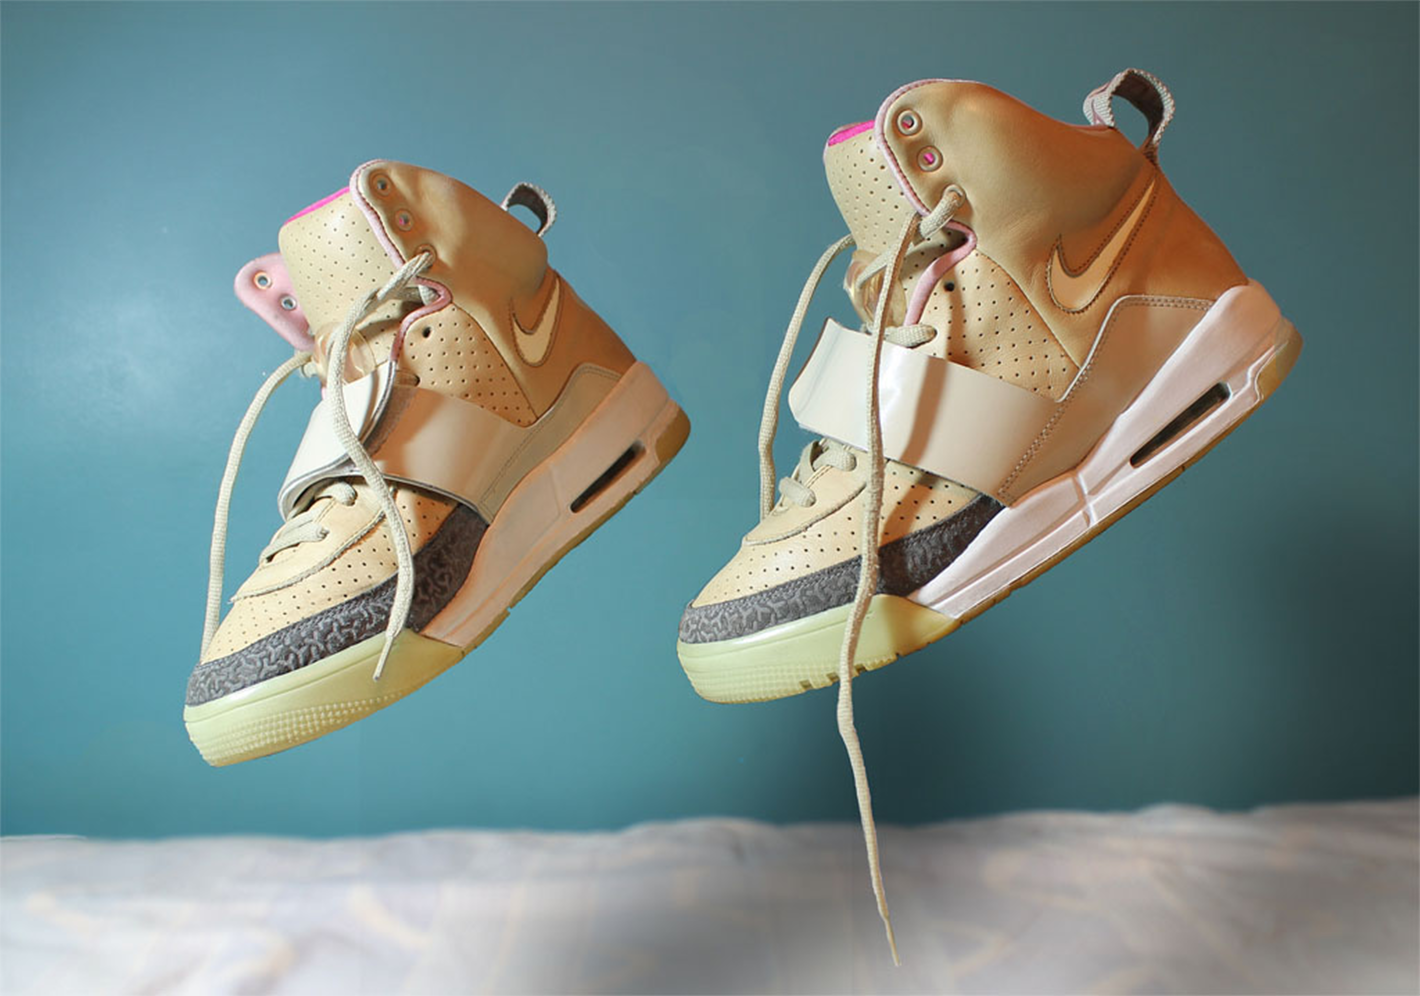 Nike x Kanye West Air Yeezy II Sneakers